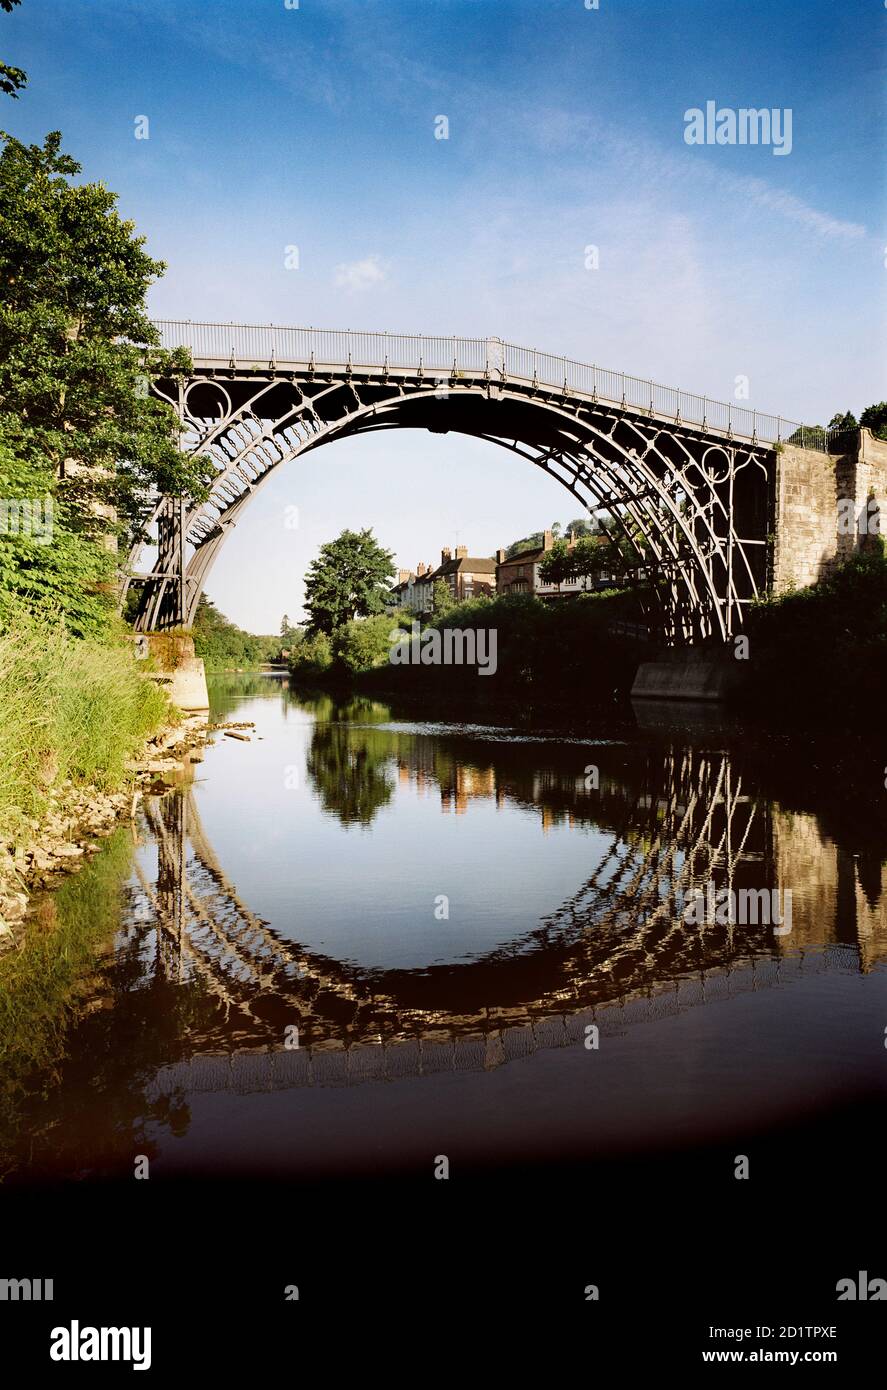 IRON BRIDGE, Telford, Shropshire. Vista del puente río abajo con reflexiones mostradas en el agua. Foto de stock